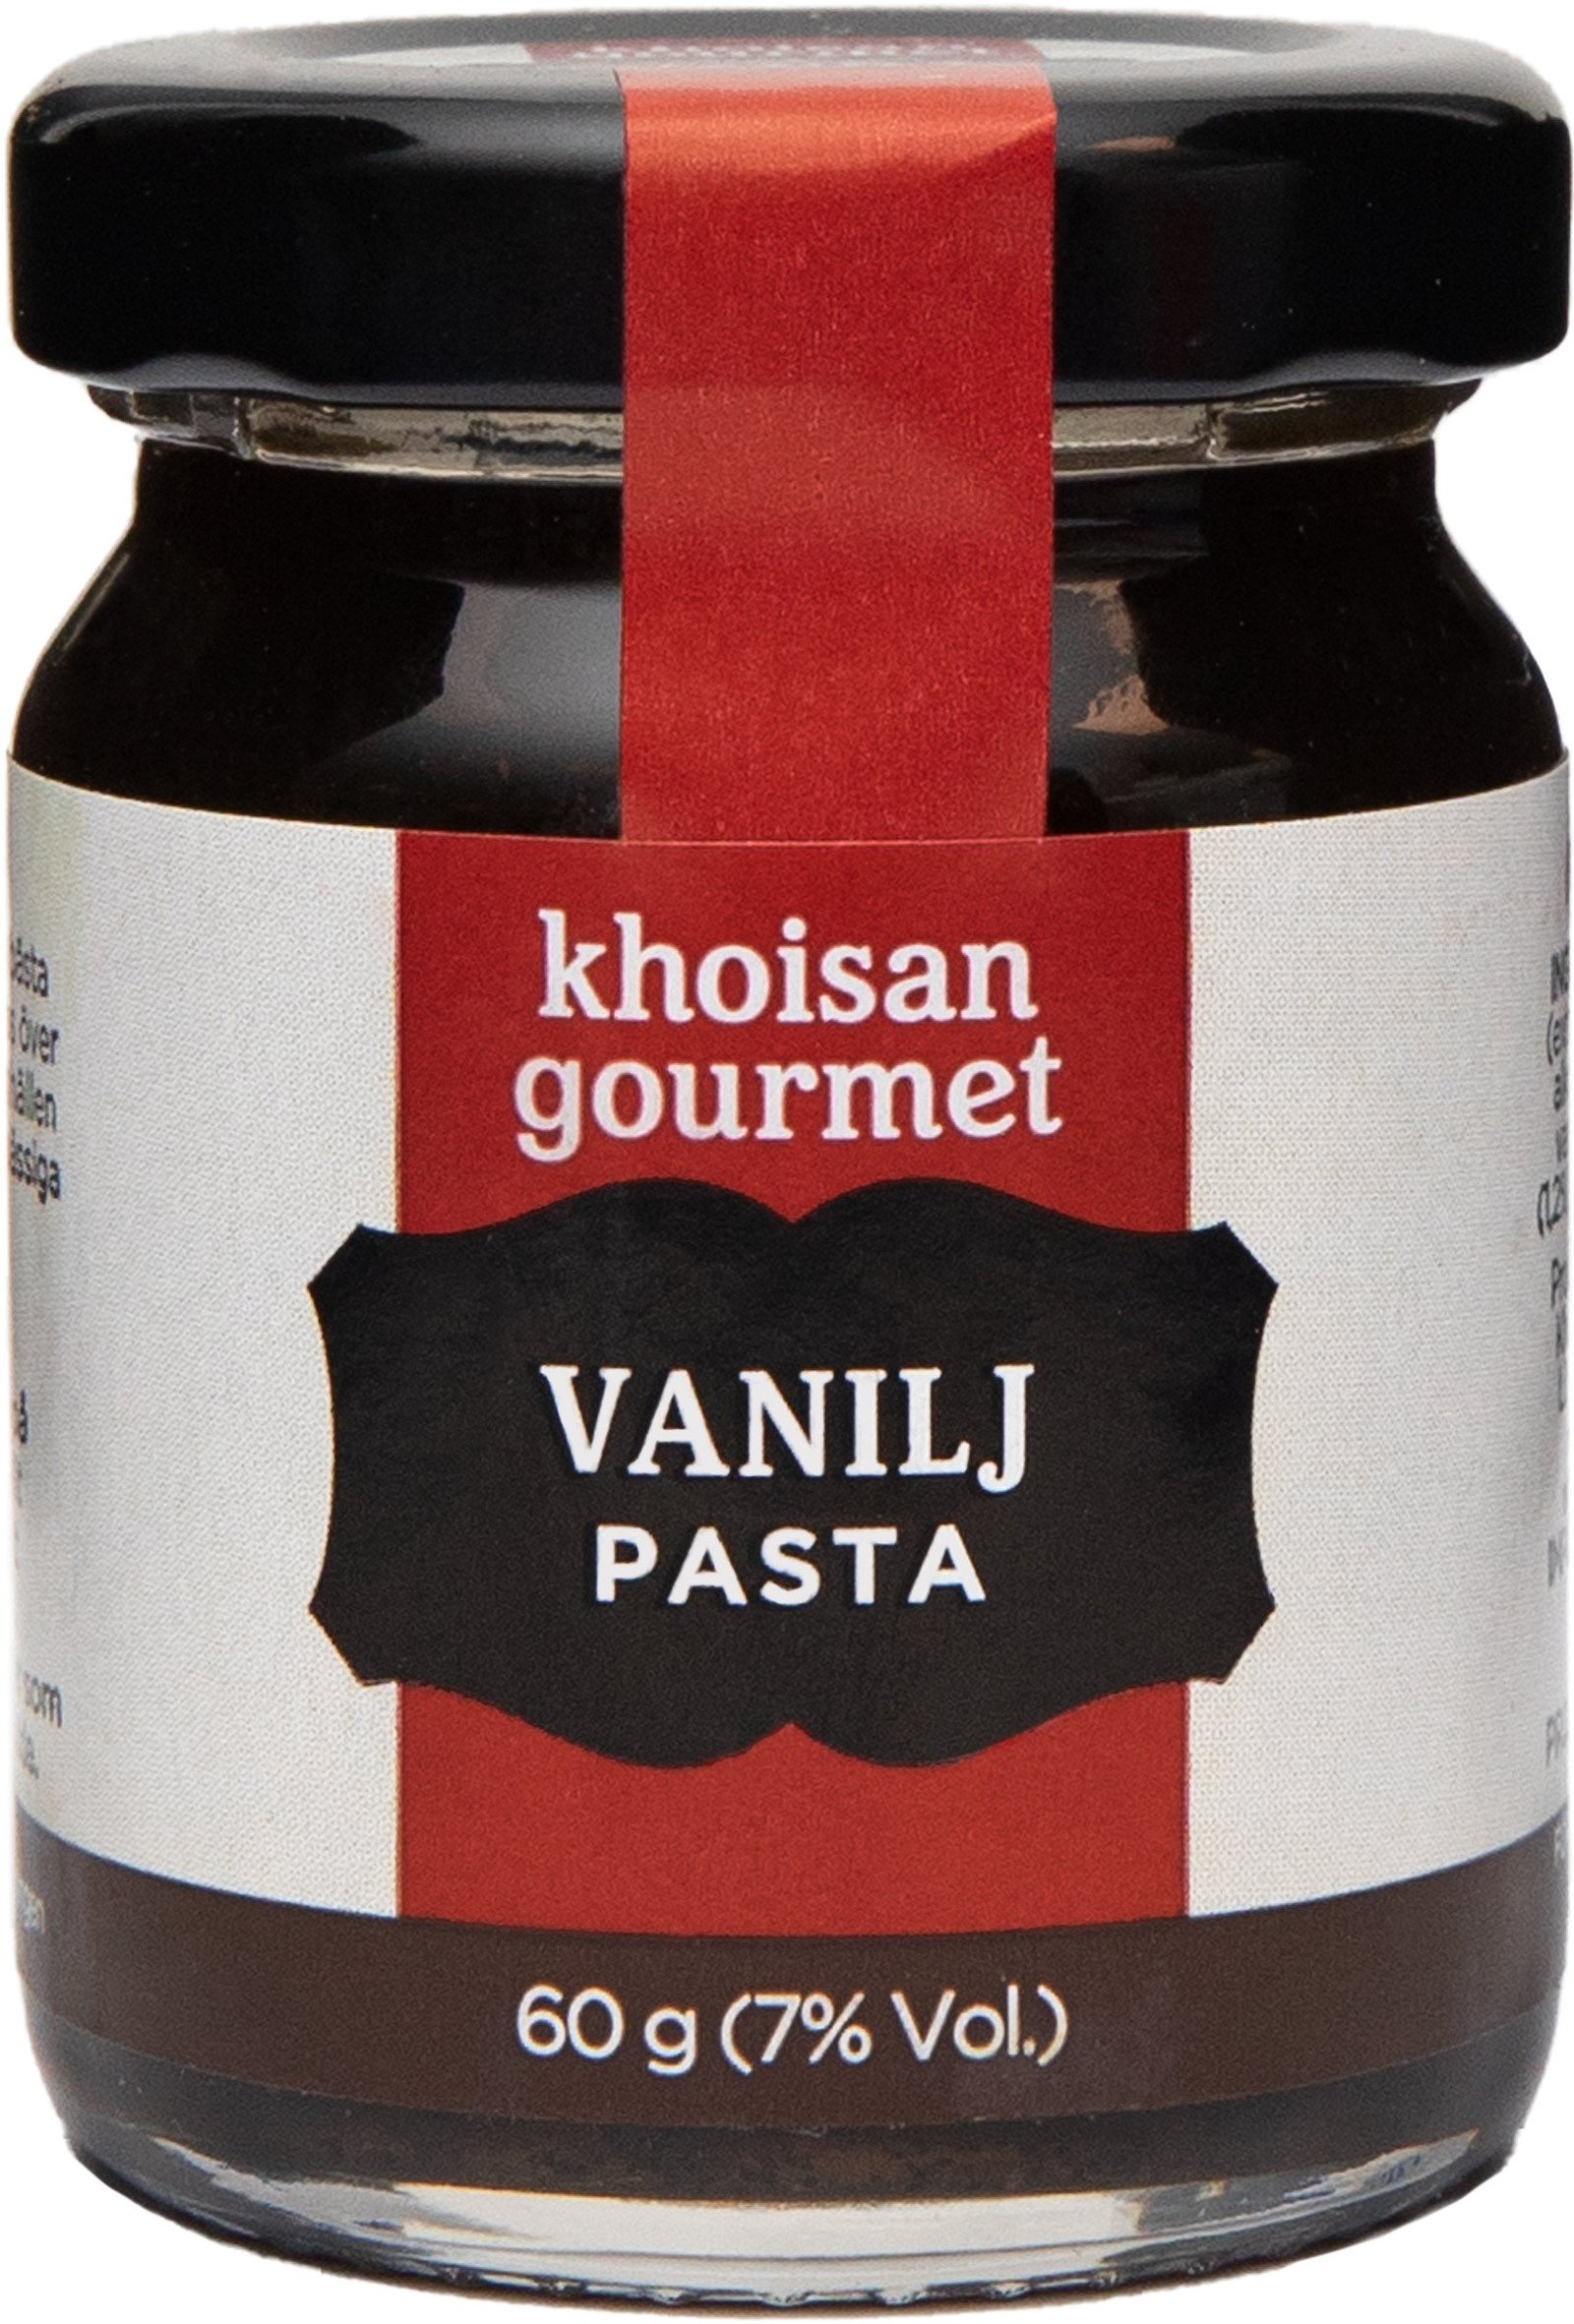 Khoisan Gourmet Vanilj Pasta 60g